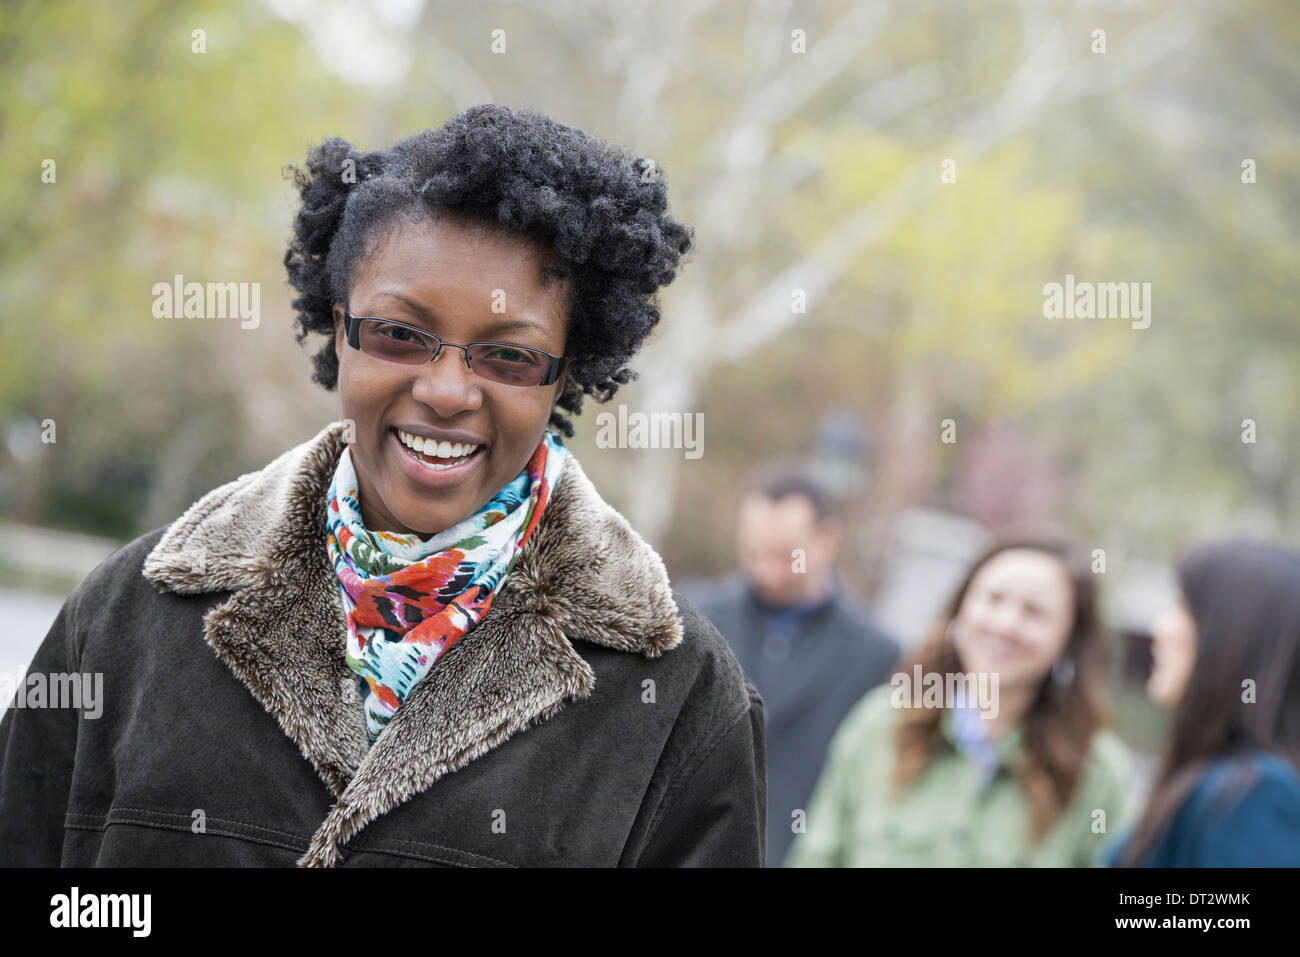 Eine Gruppe von Menschen in einer Stadt parken eine junge Frau in einem Mantel mit einem großen Kragen lächelt und schaut in die Kamera Stockfoto